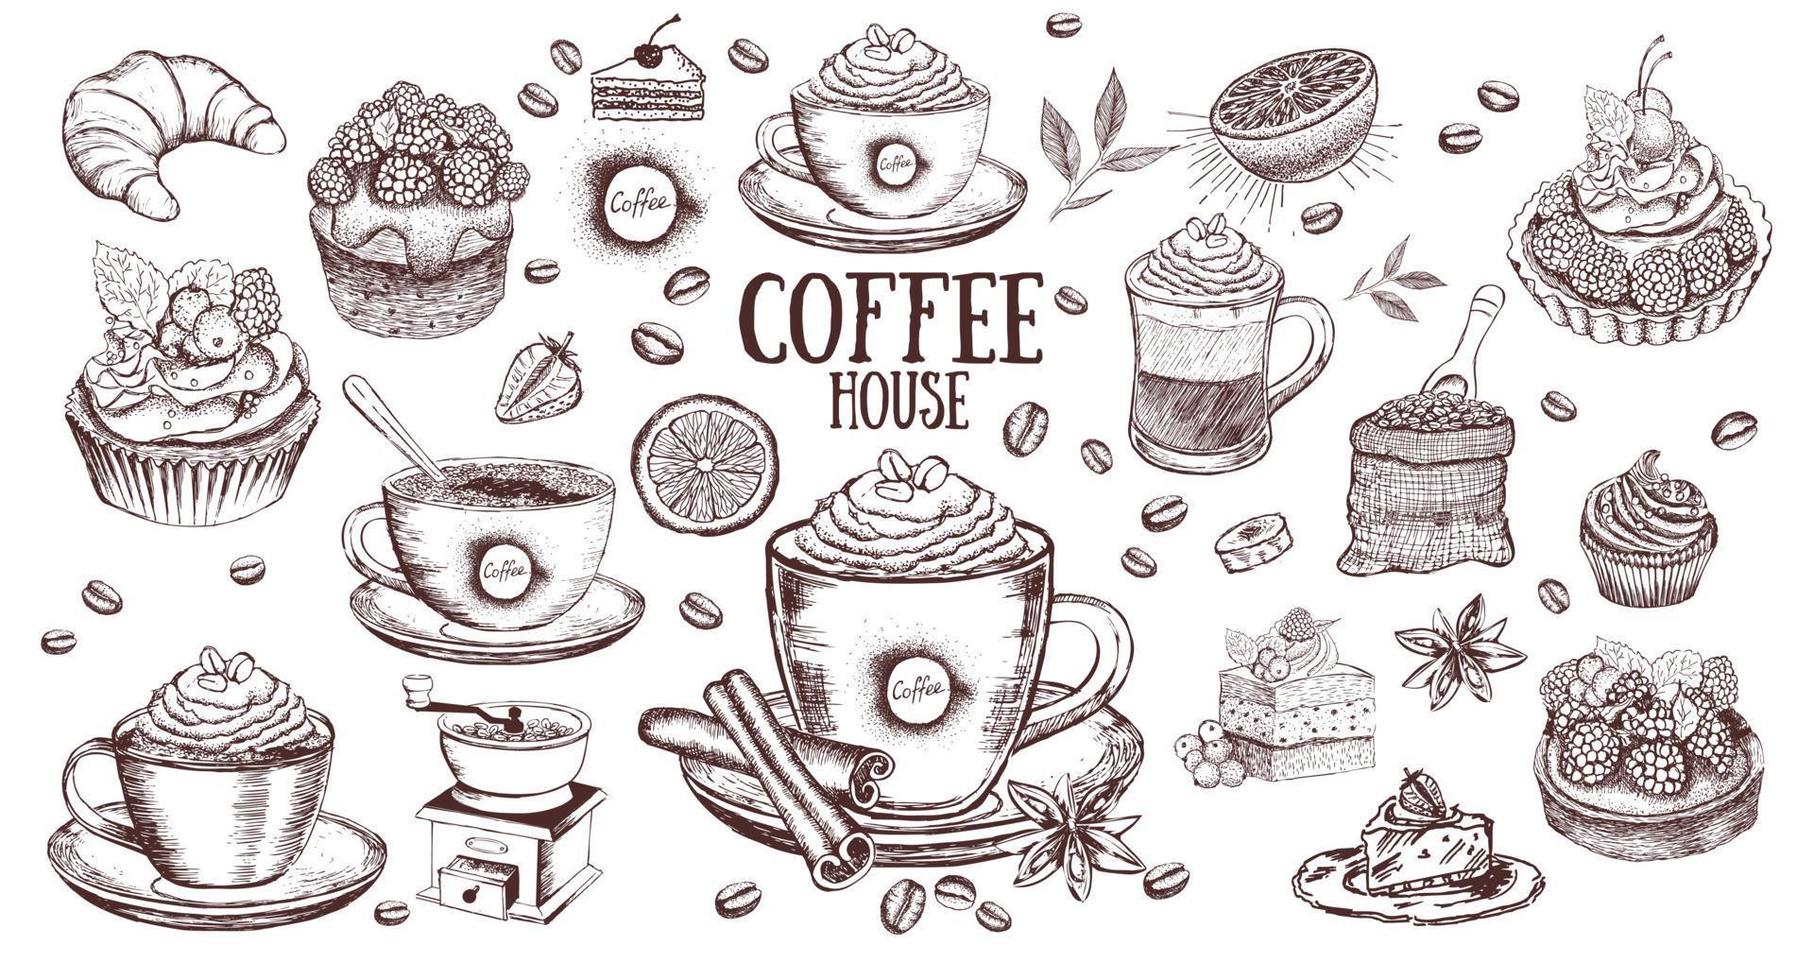 tasse de café et grains de café. fond de vecteur dessiné à la main dans un style vintage.